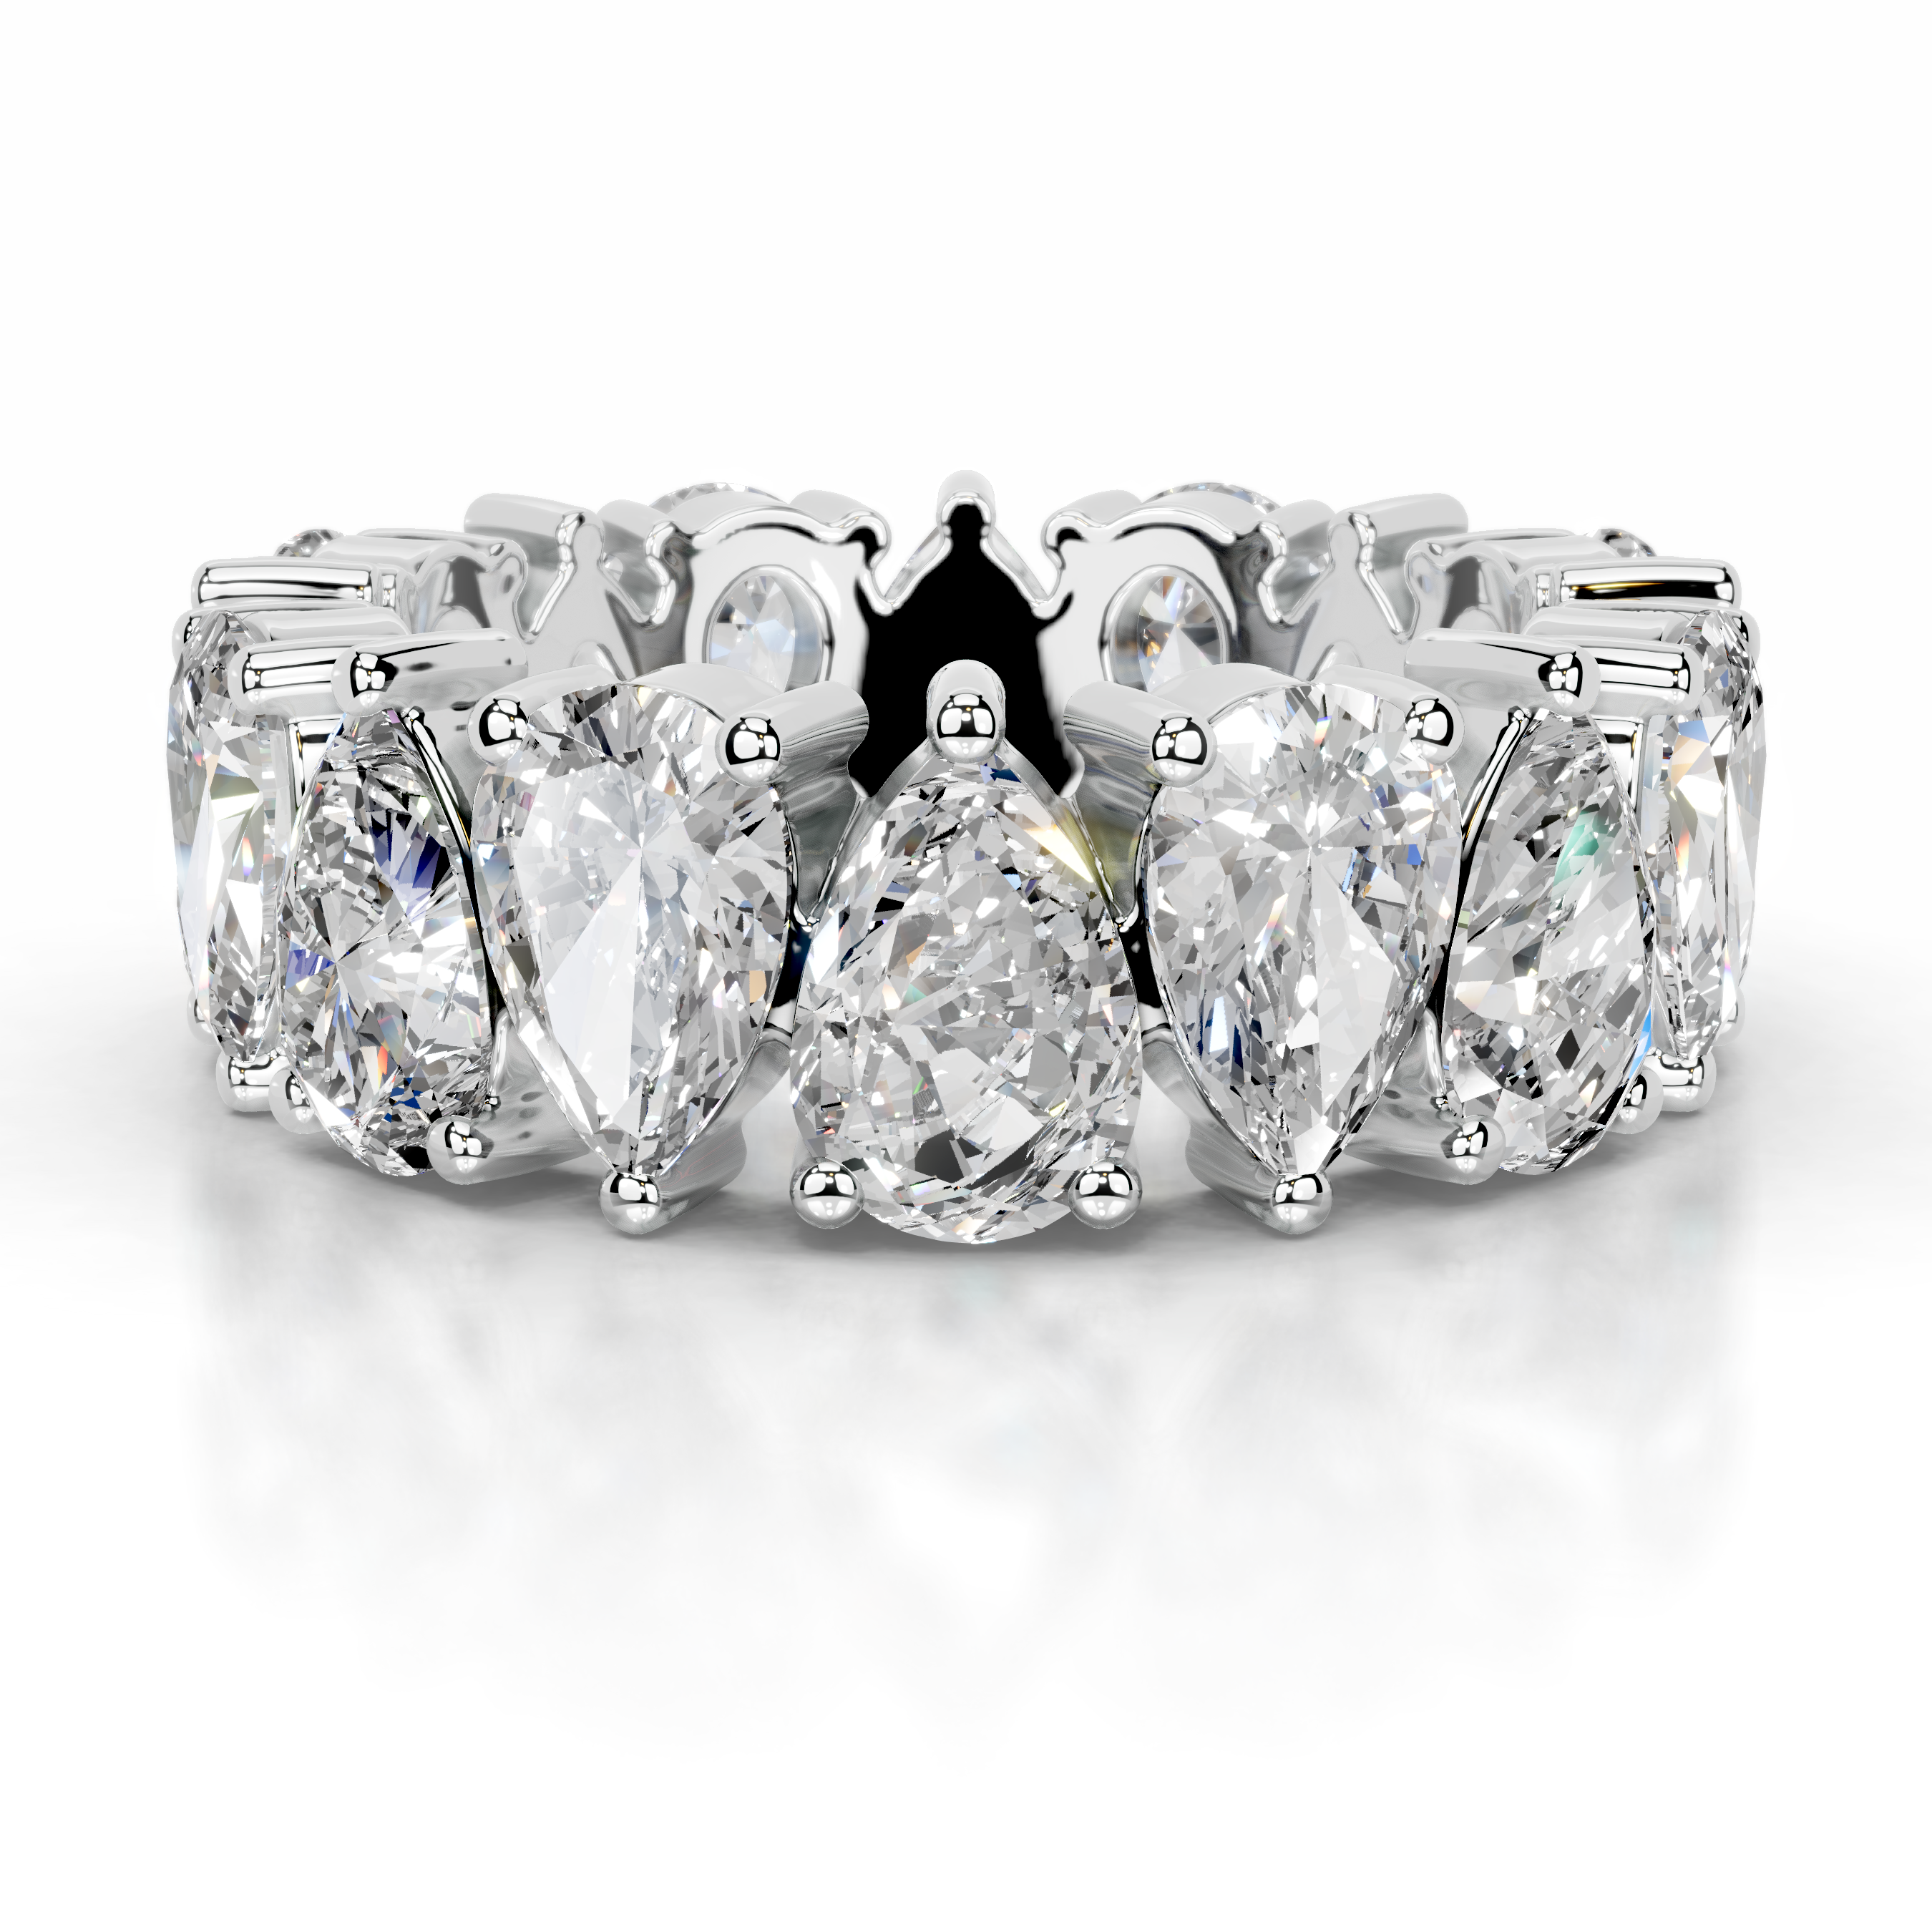 Sarah Lab Grown Diamond Wedding Ring   (6 Carat) -14K White Gold